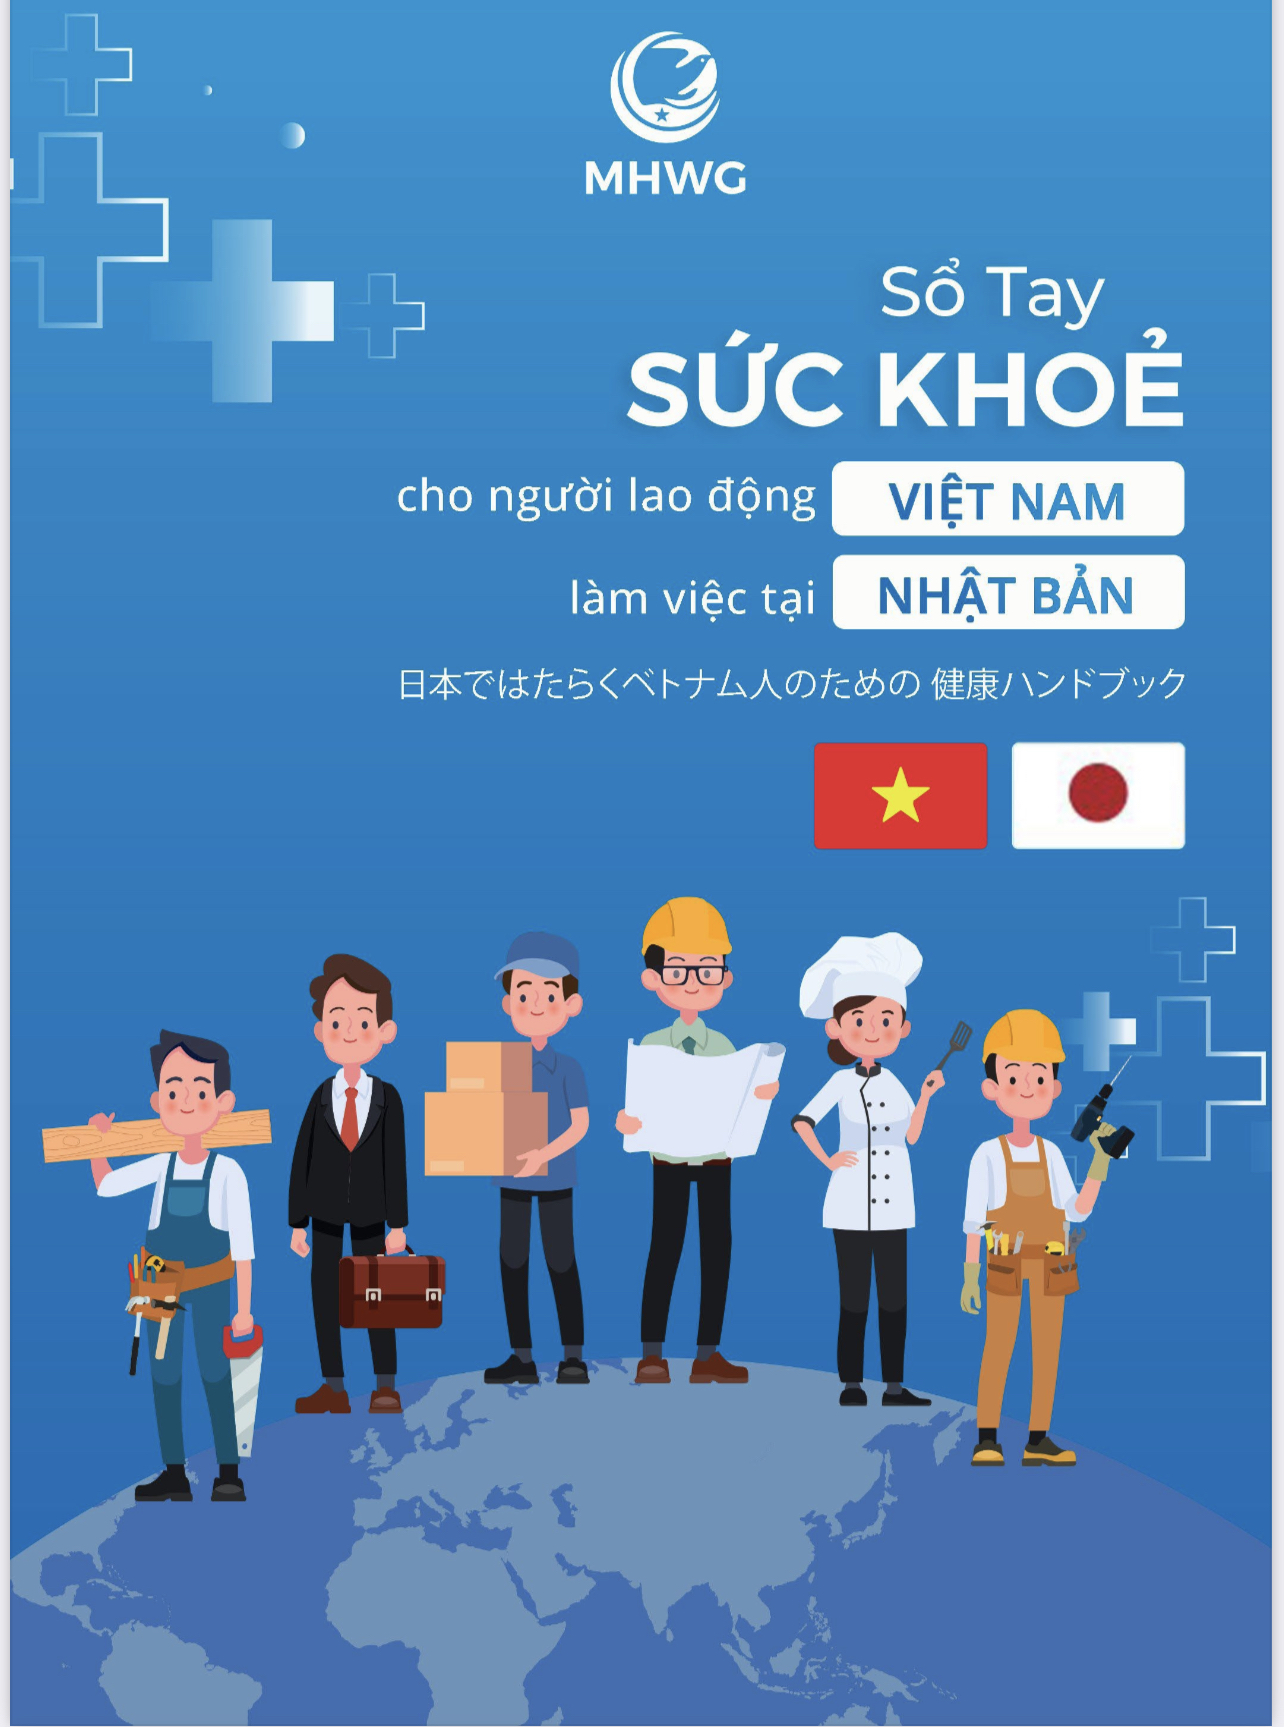 Sổ tay sức khỏe cho người lao động đi làm việc tại Hàn Quốc và Nhật Bản